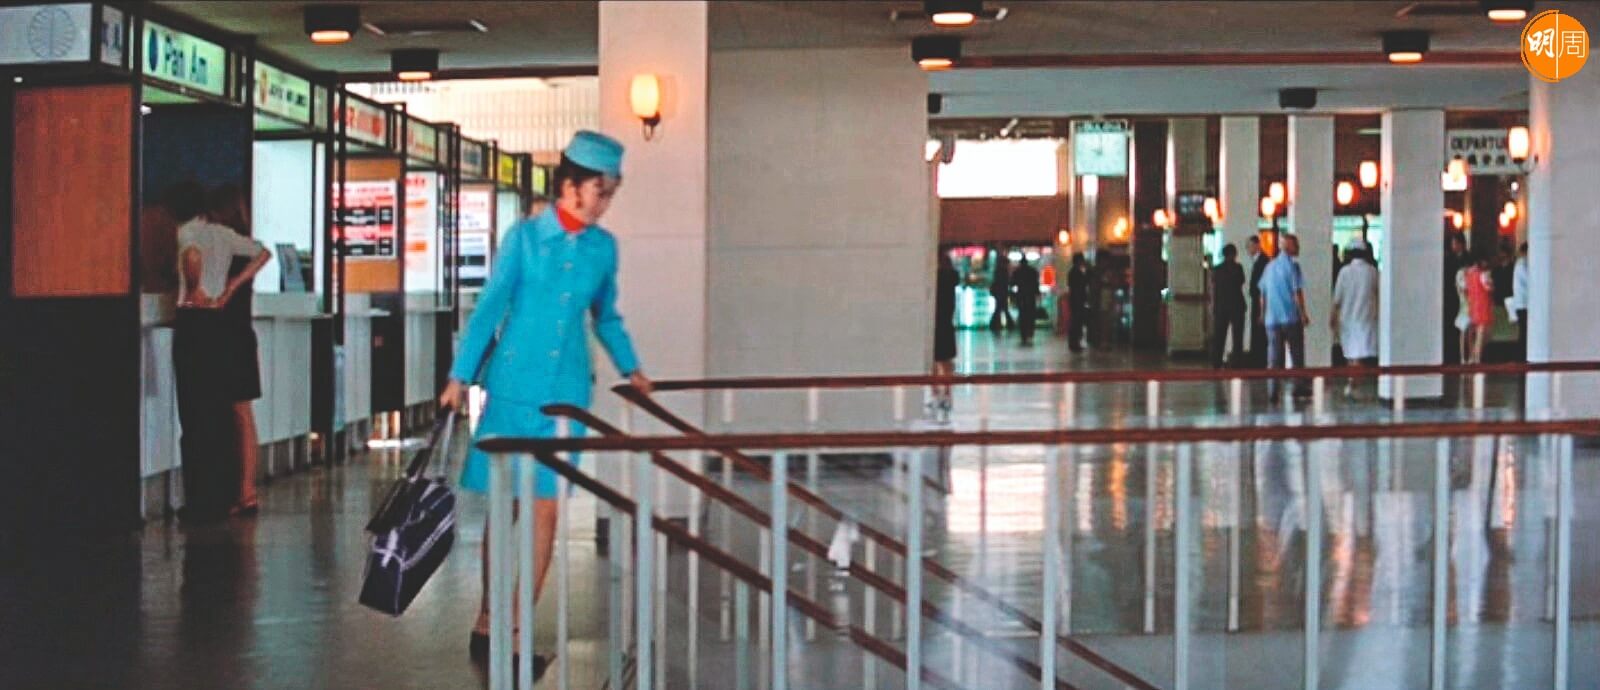 一九七四年的啟德機場二樓。一身彩藍空姐服的井莉出差回港。但當年二樓是送機閘口，一樓才是接機大廳。這一幕飾演空姐的井莉單人匹馬，同行機隊呢？她人丁單薄，但為了她心急會情人而拍的兩個鏡頭，卻「勞師動眾」。 